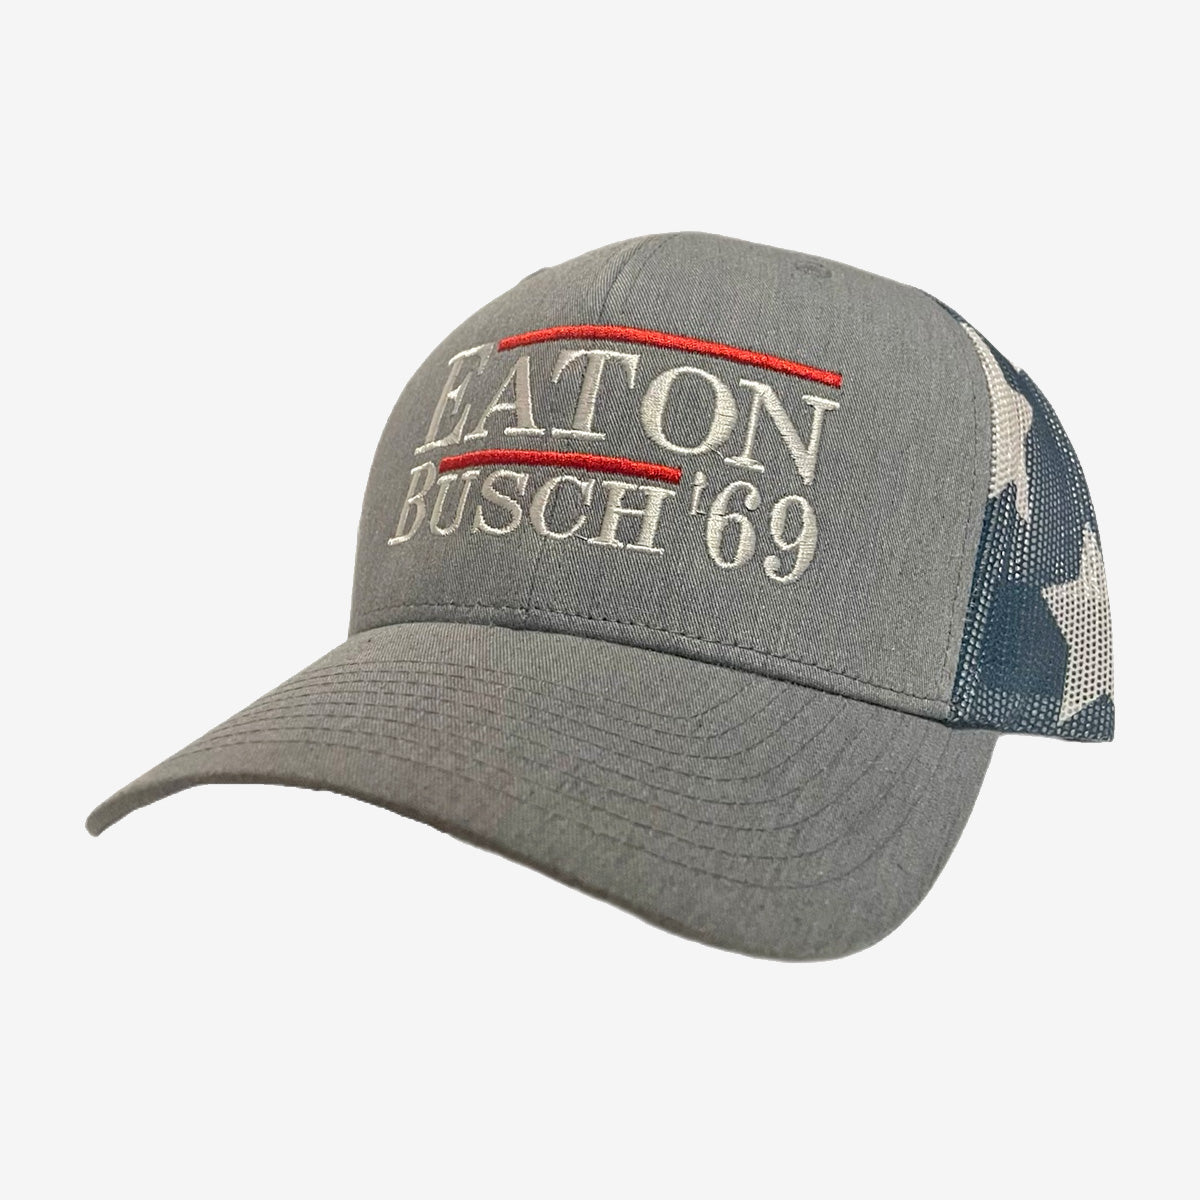 Eaton Busch 69 Hat